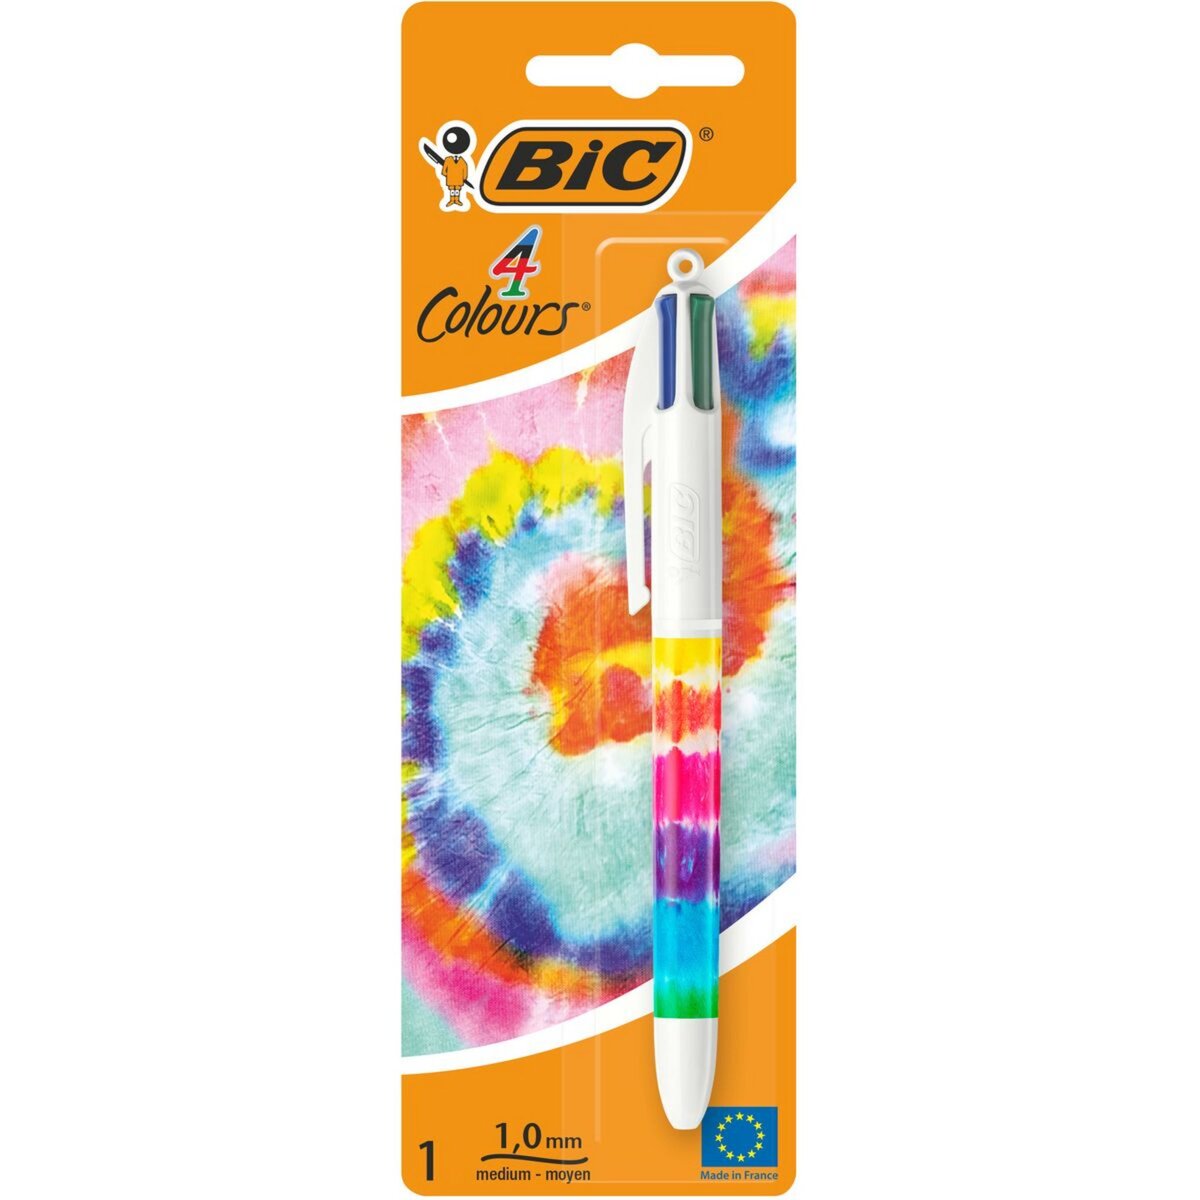 Acheter en ligne BIC Stylo à bille (Multicolore) à bons prix et en toute  sécurité 